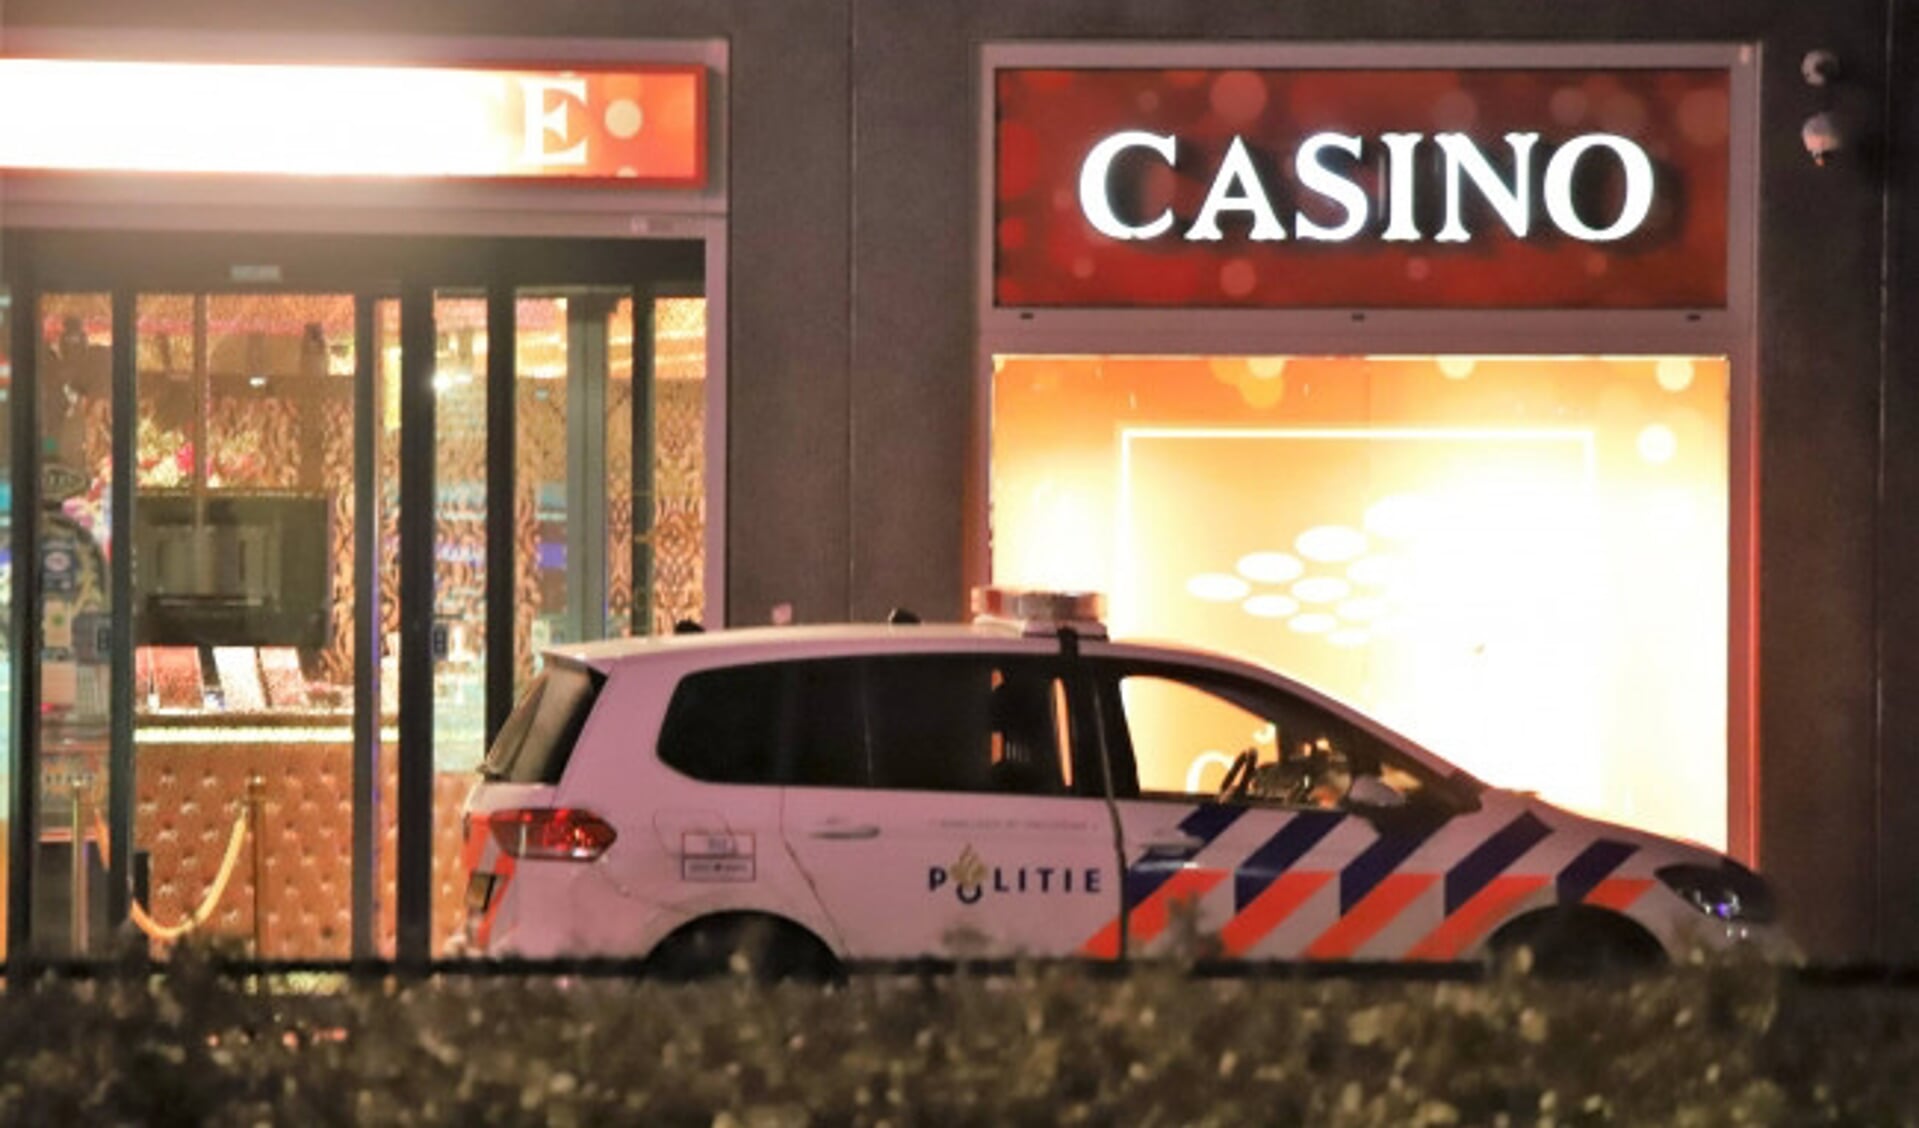  De politie is afgelopen nacht uitgerukt naar het Stadionsplein in Zwolle vanwege een overval op het casino aldaar.   